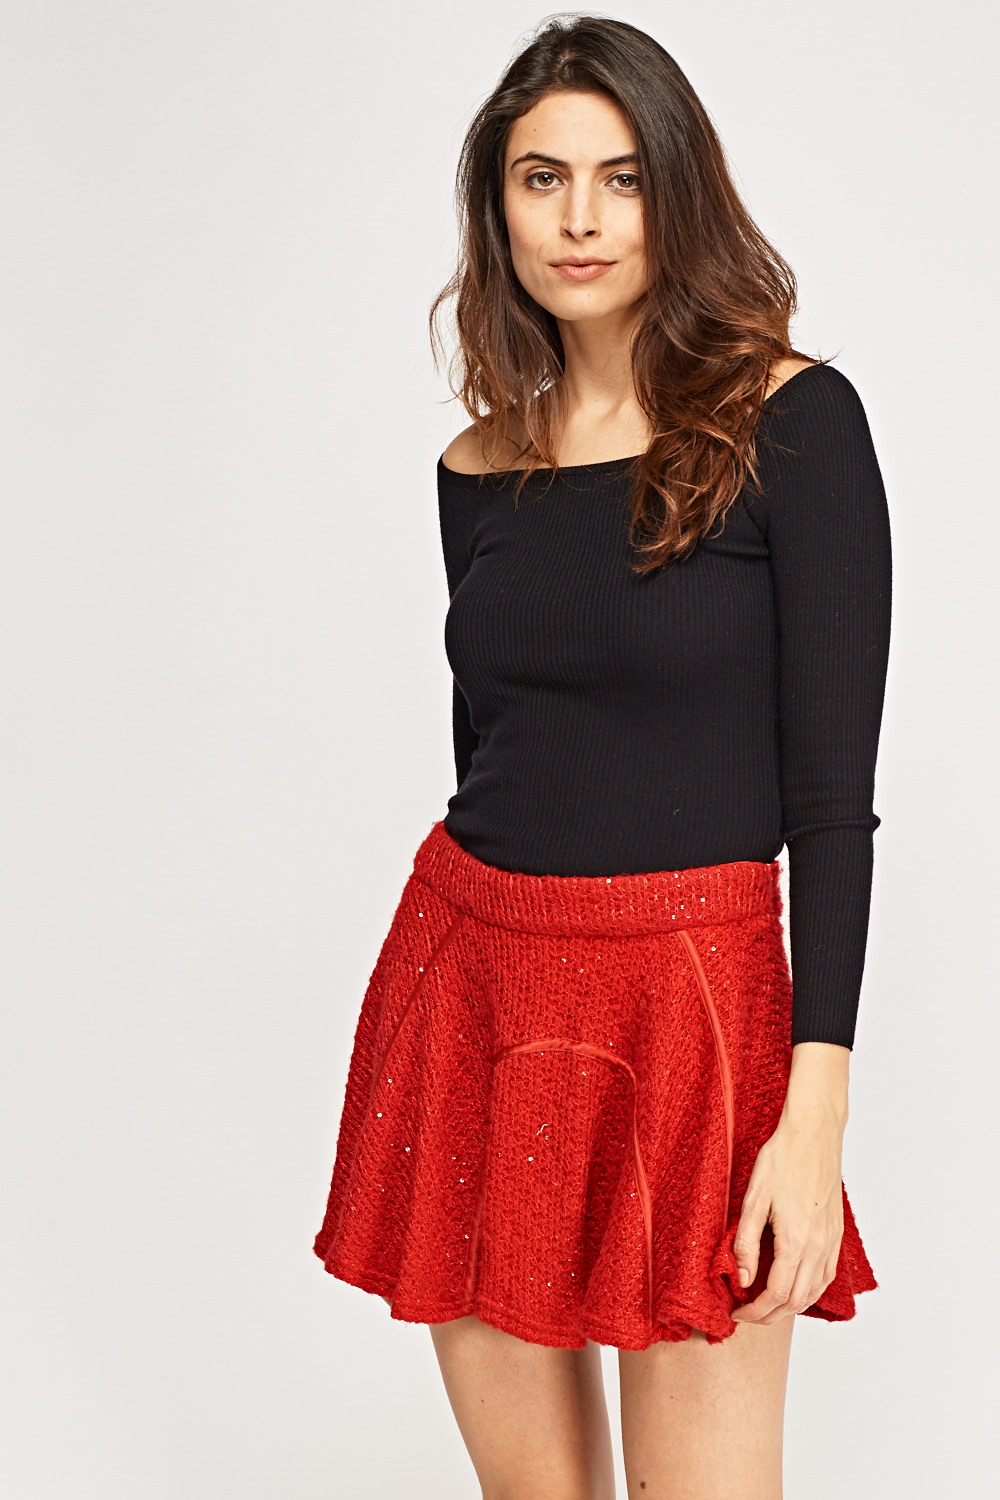 Sequin Insert Knitted Skirt - Just $7